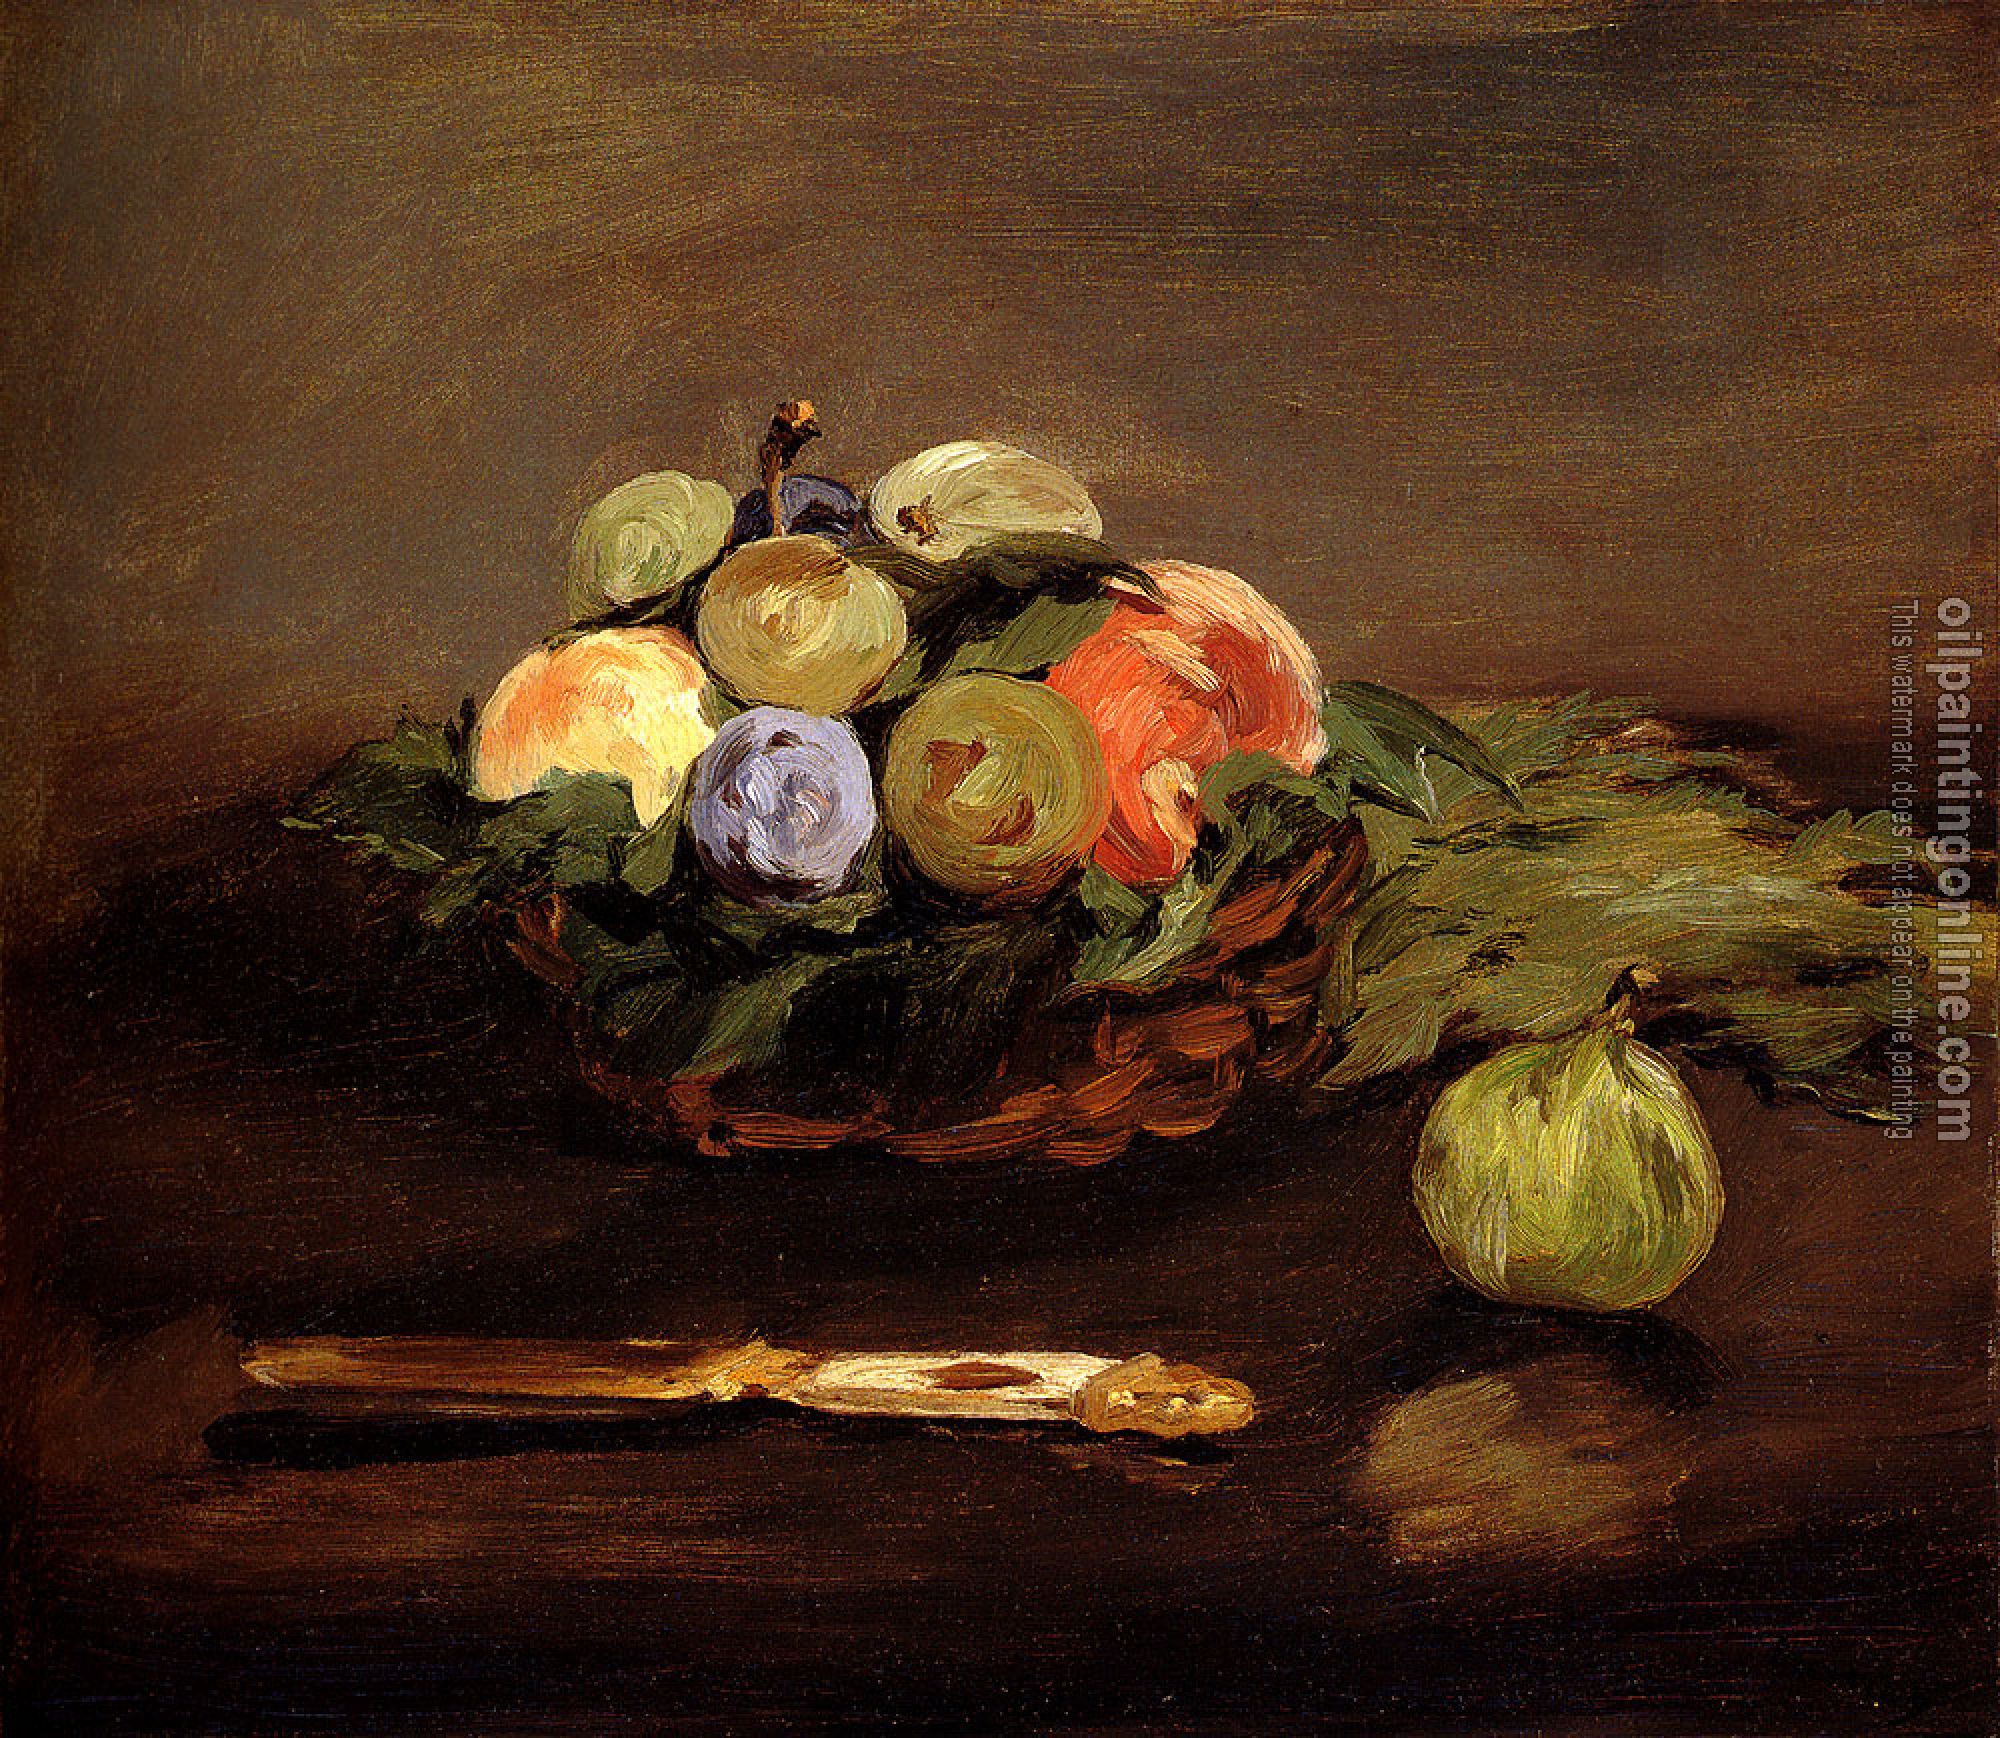 Manet, Edouard - Basket Of Fruit